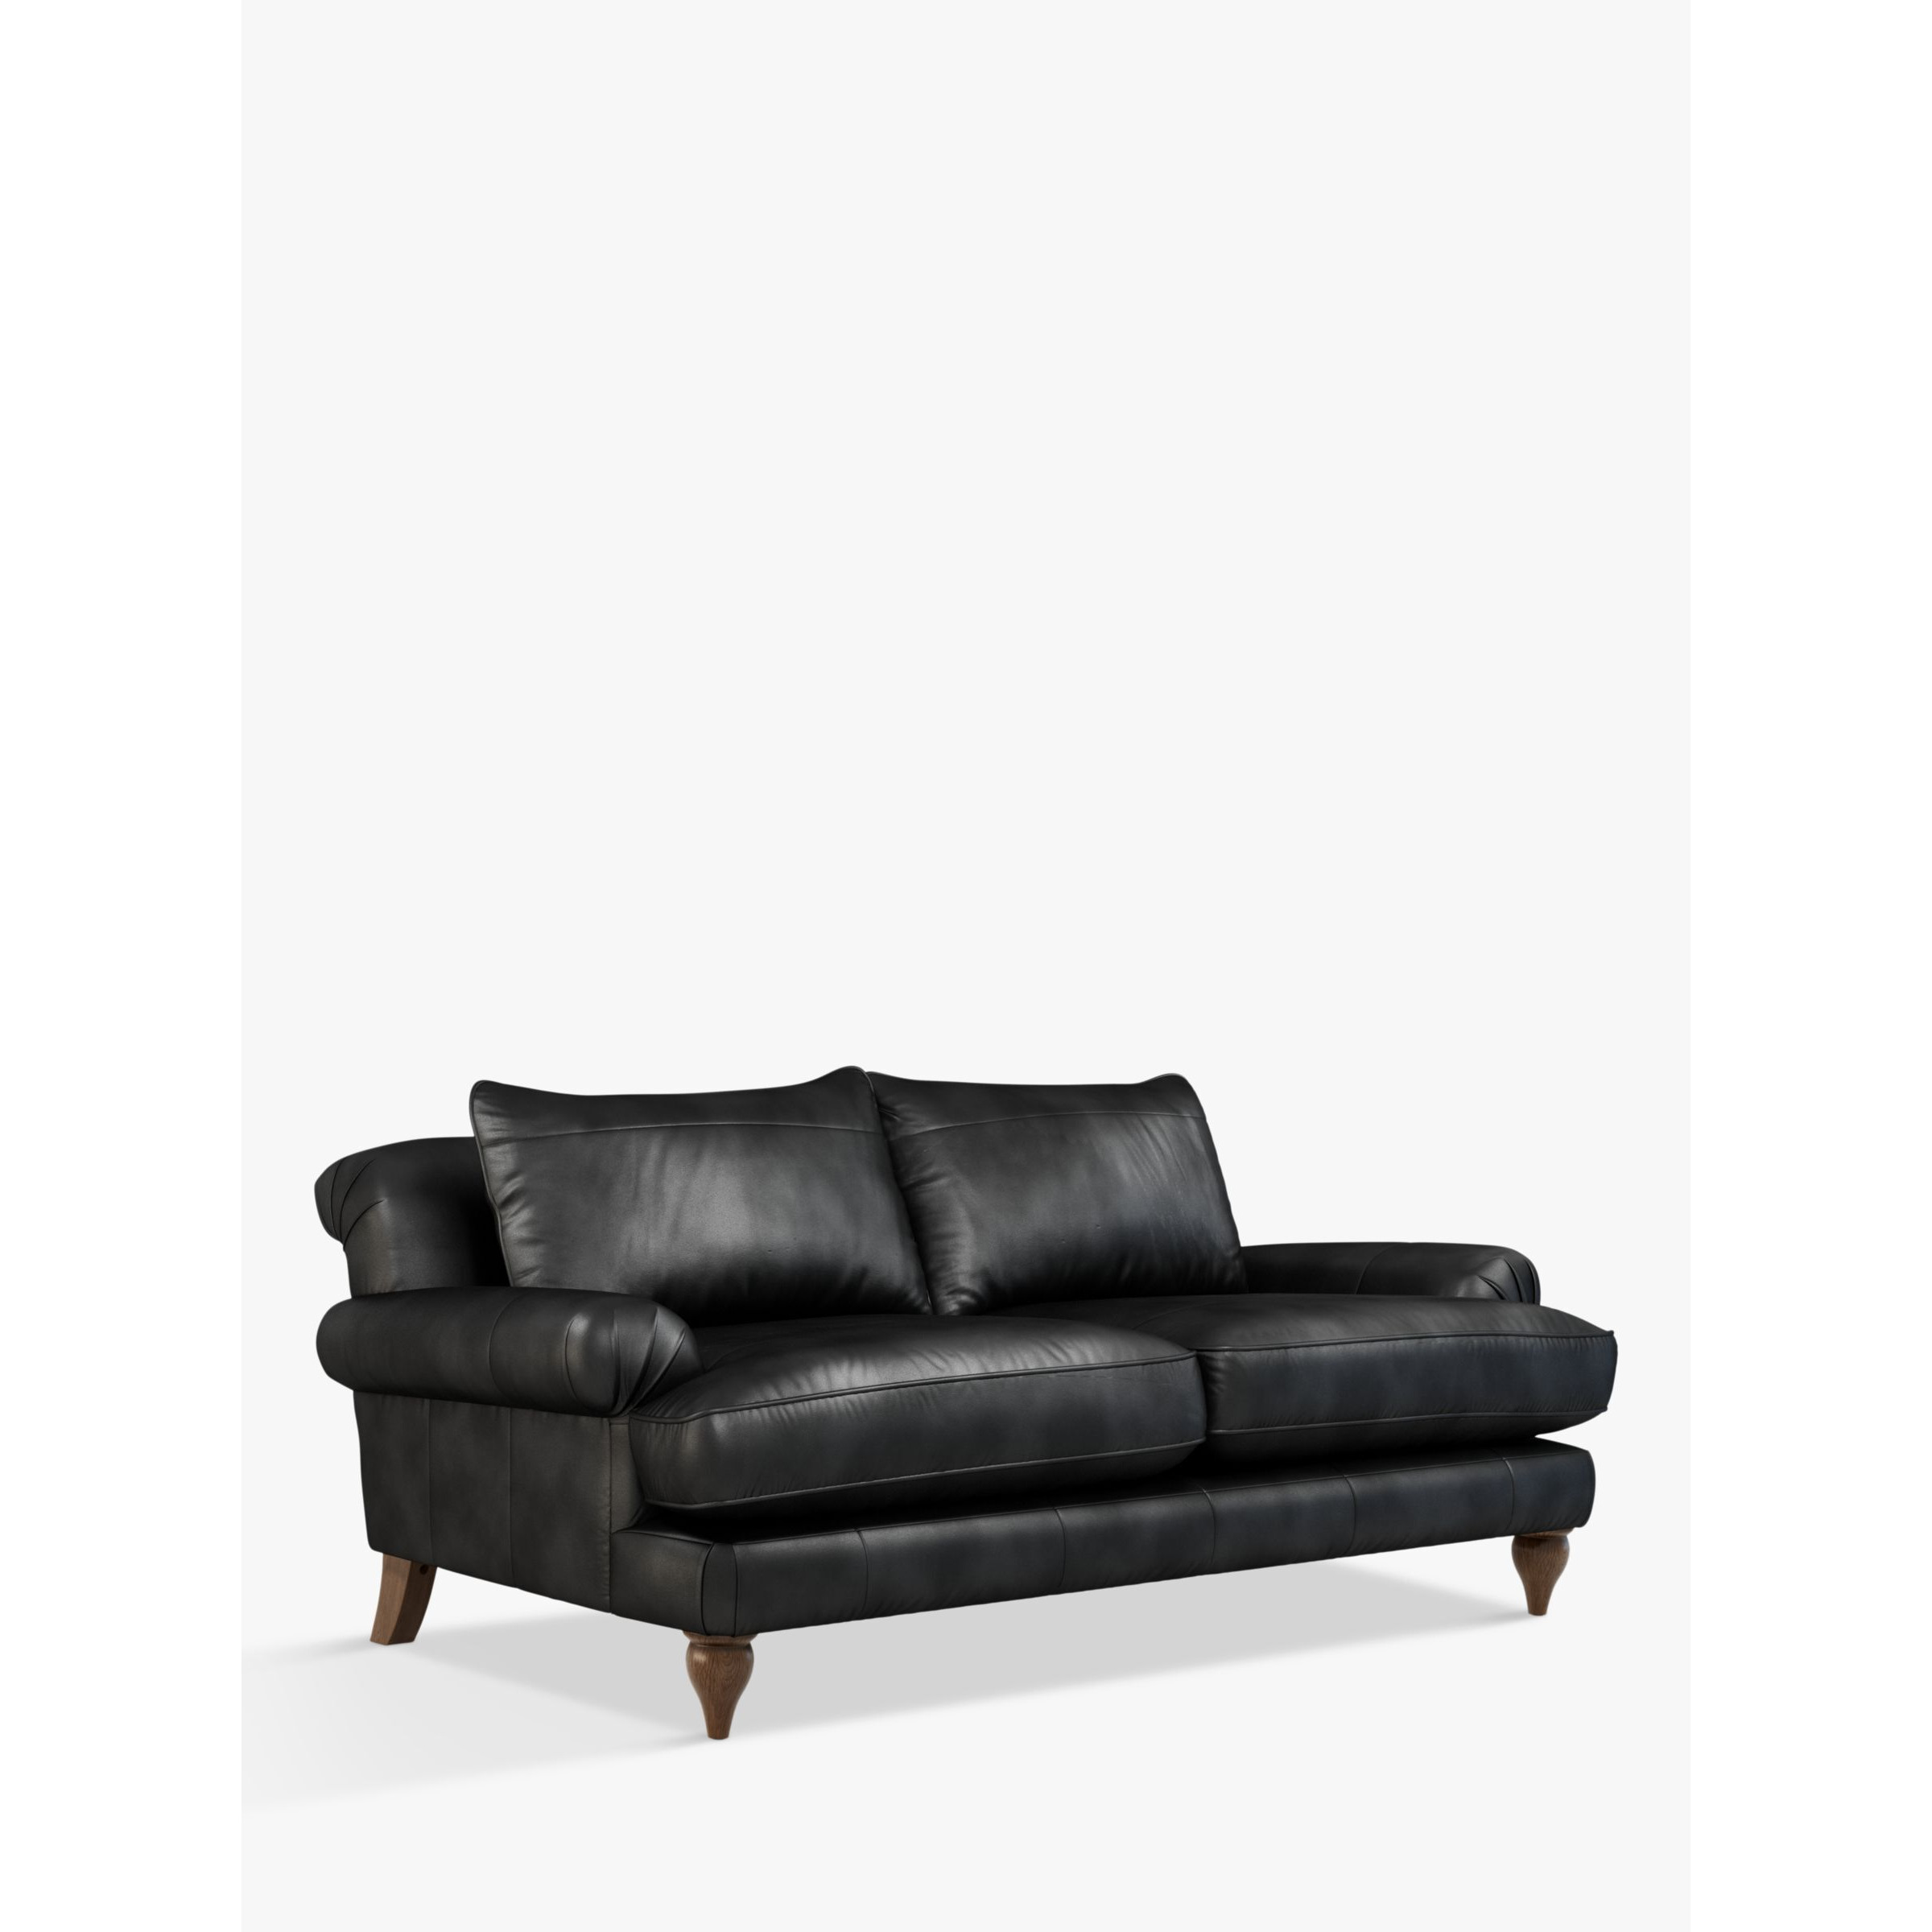 John Lewis Findon Large 3 Seater Leather Sofa, Dark Leg - image 1